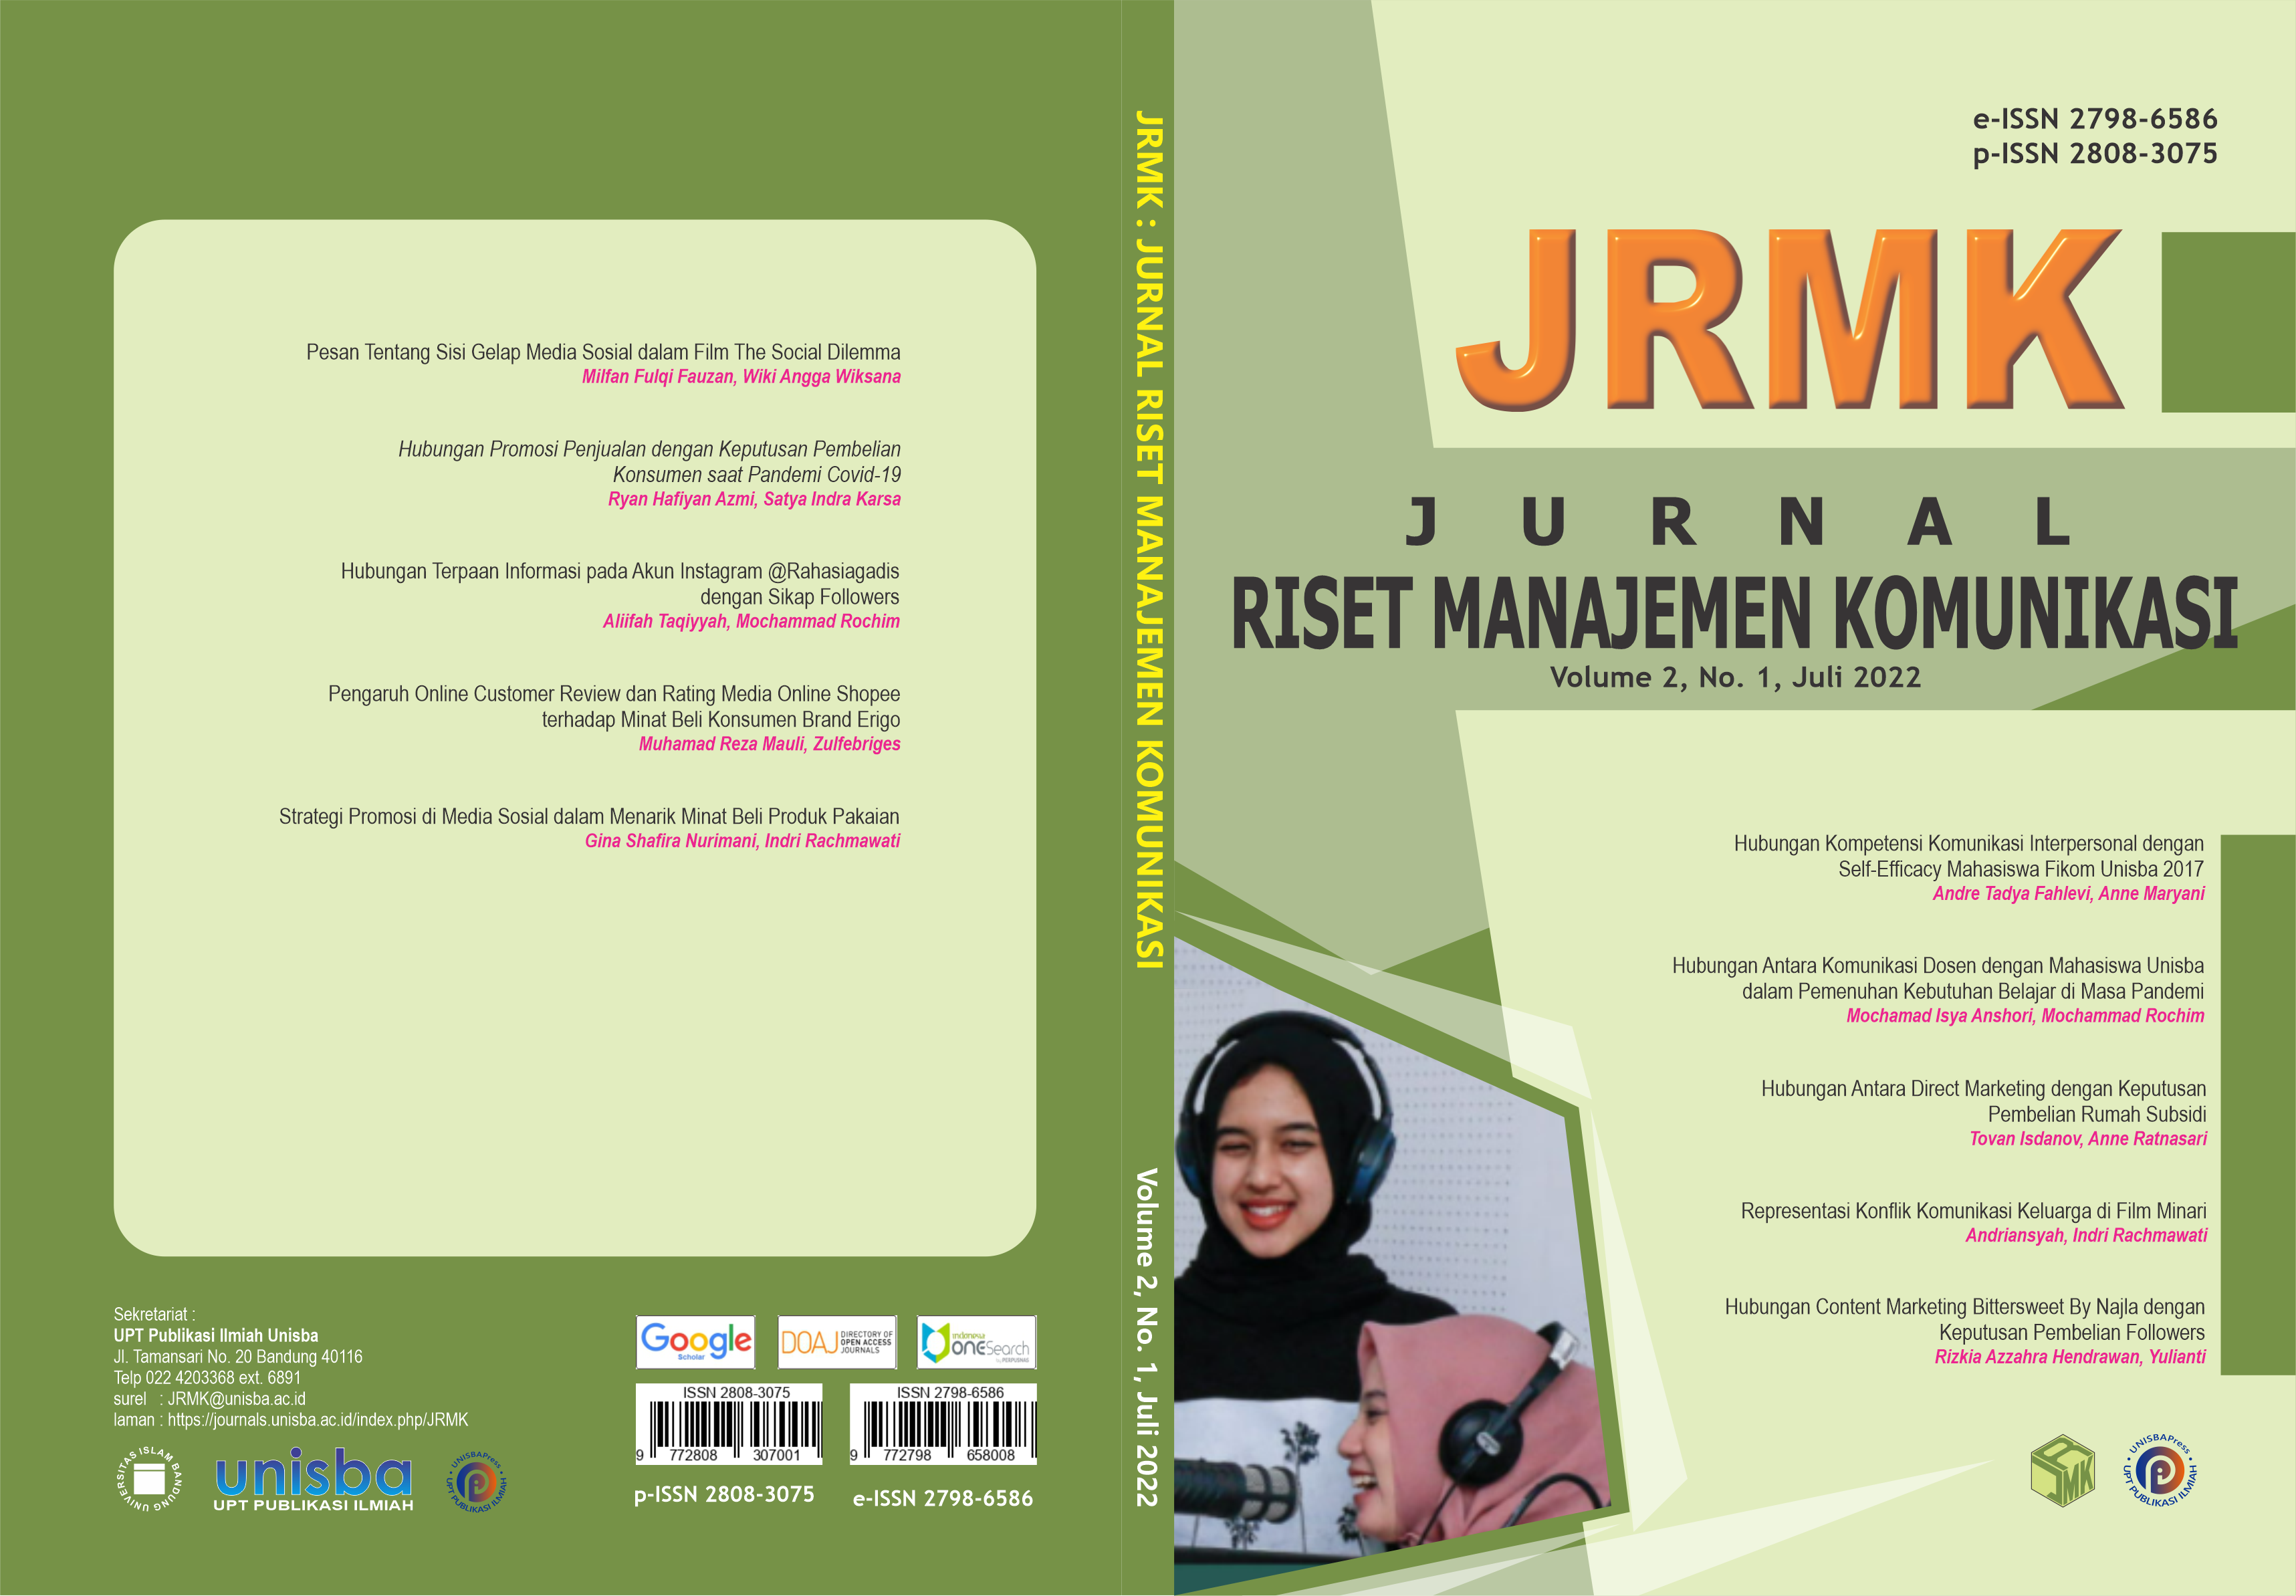 					View Volume 2, No. 1, Juli 2022, Jurnal Riset Manajemen Komunikasi (JRMK)
				